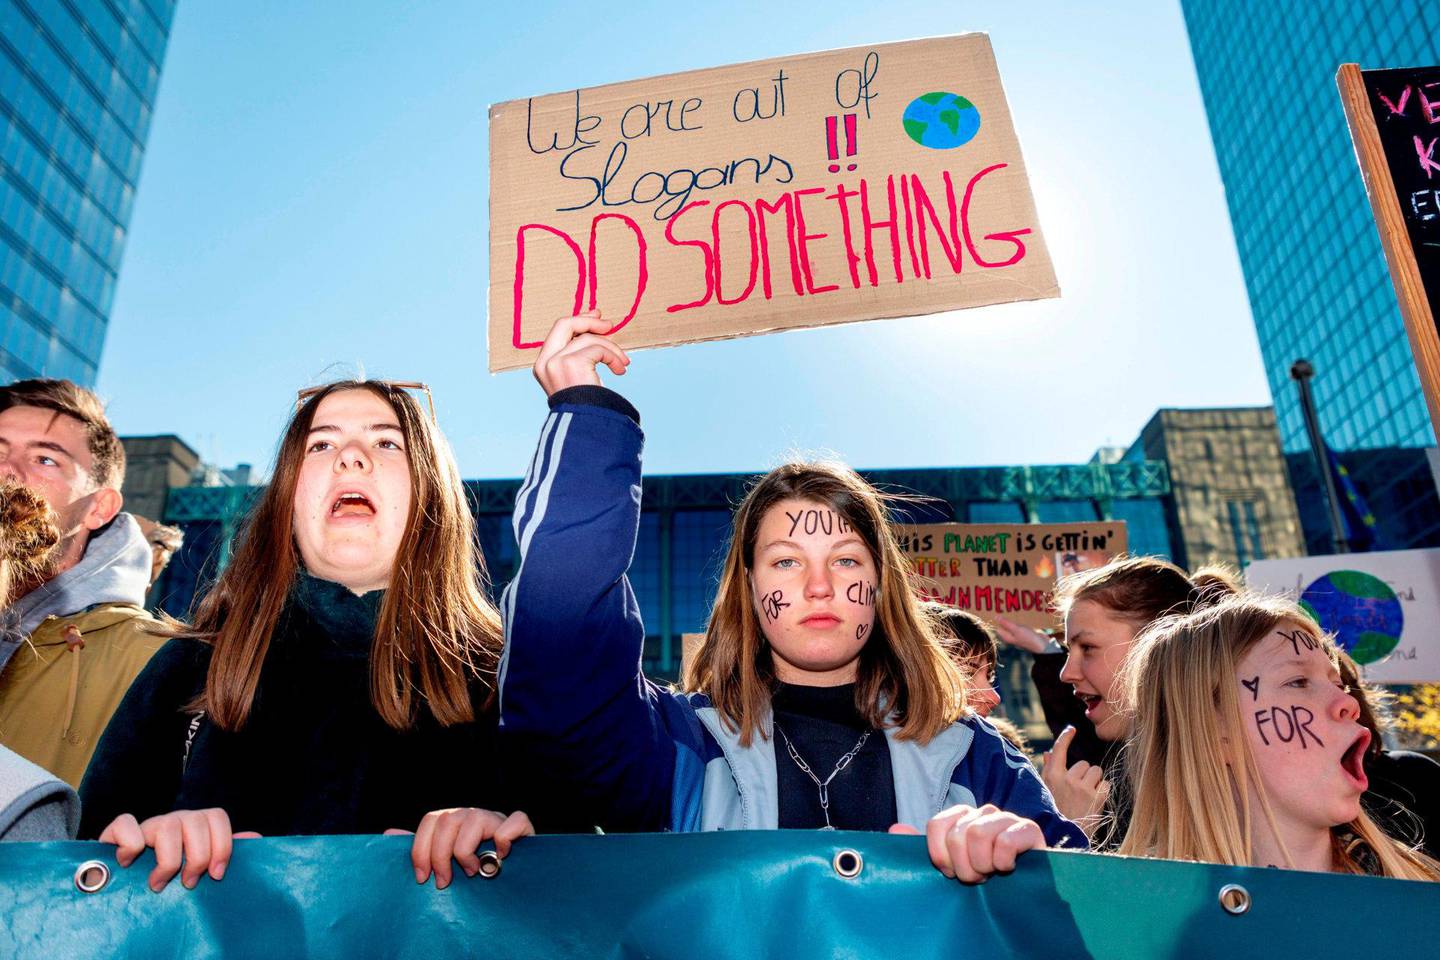 BEVEGELSE: Det er snart ett år siden Greta Thunberg startet det som skulle bli en bevegelse. Her fra en demonstrasjon blant unge i Brussel i april. FOTO: NTB SCANPIX